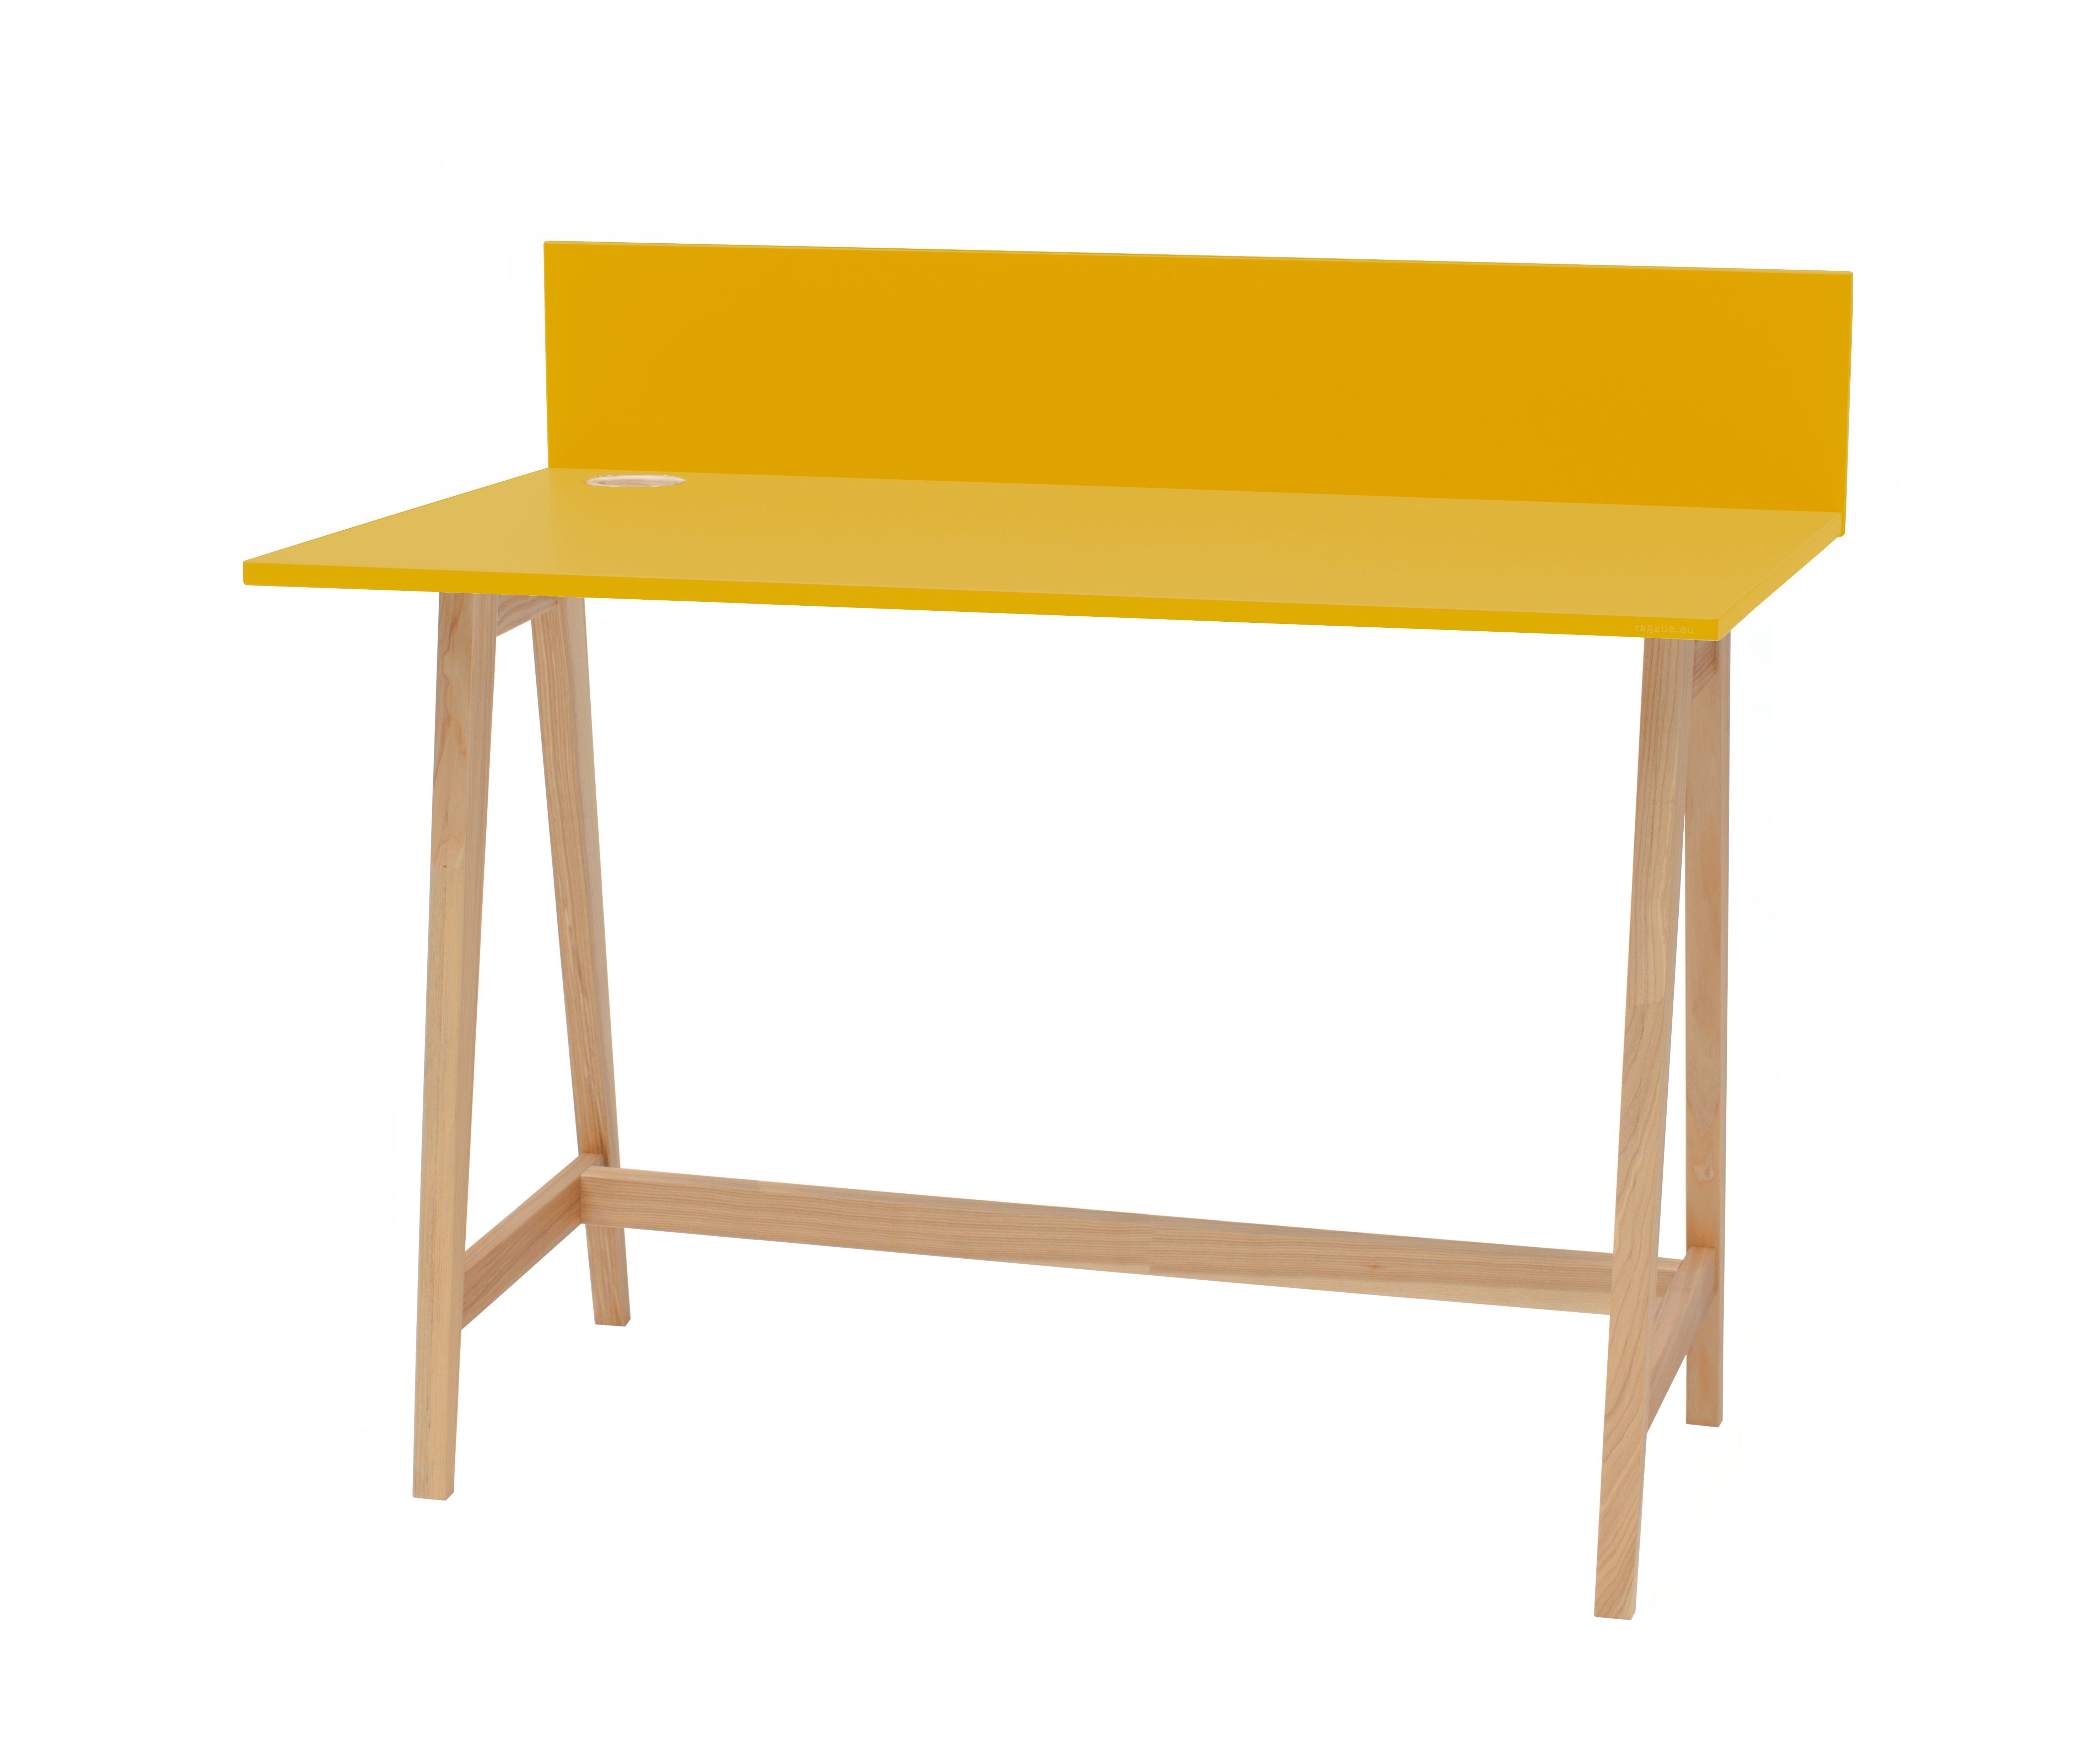 Siblo Schreibtisch Kinderschreibtisch Tony - Bunter Schreibtisch - ohne Schublade - Kinderzimmer - MDF-Platte - Eschenholz (Kinderschreibtisch Tony ohne Schublade) Gelb